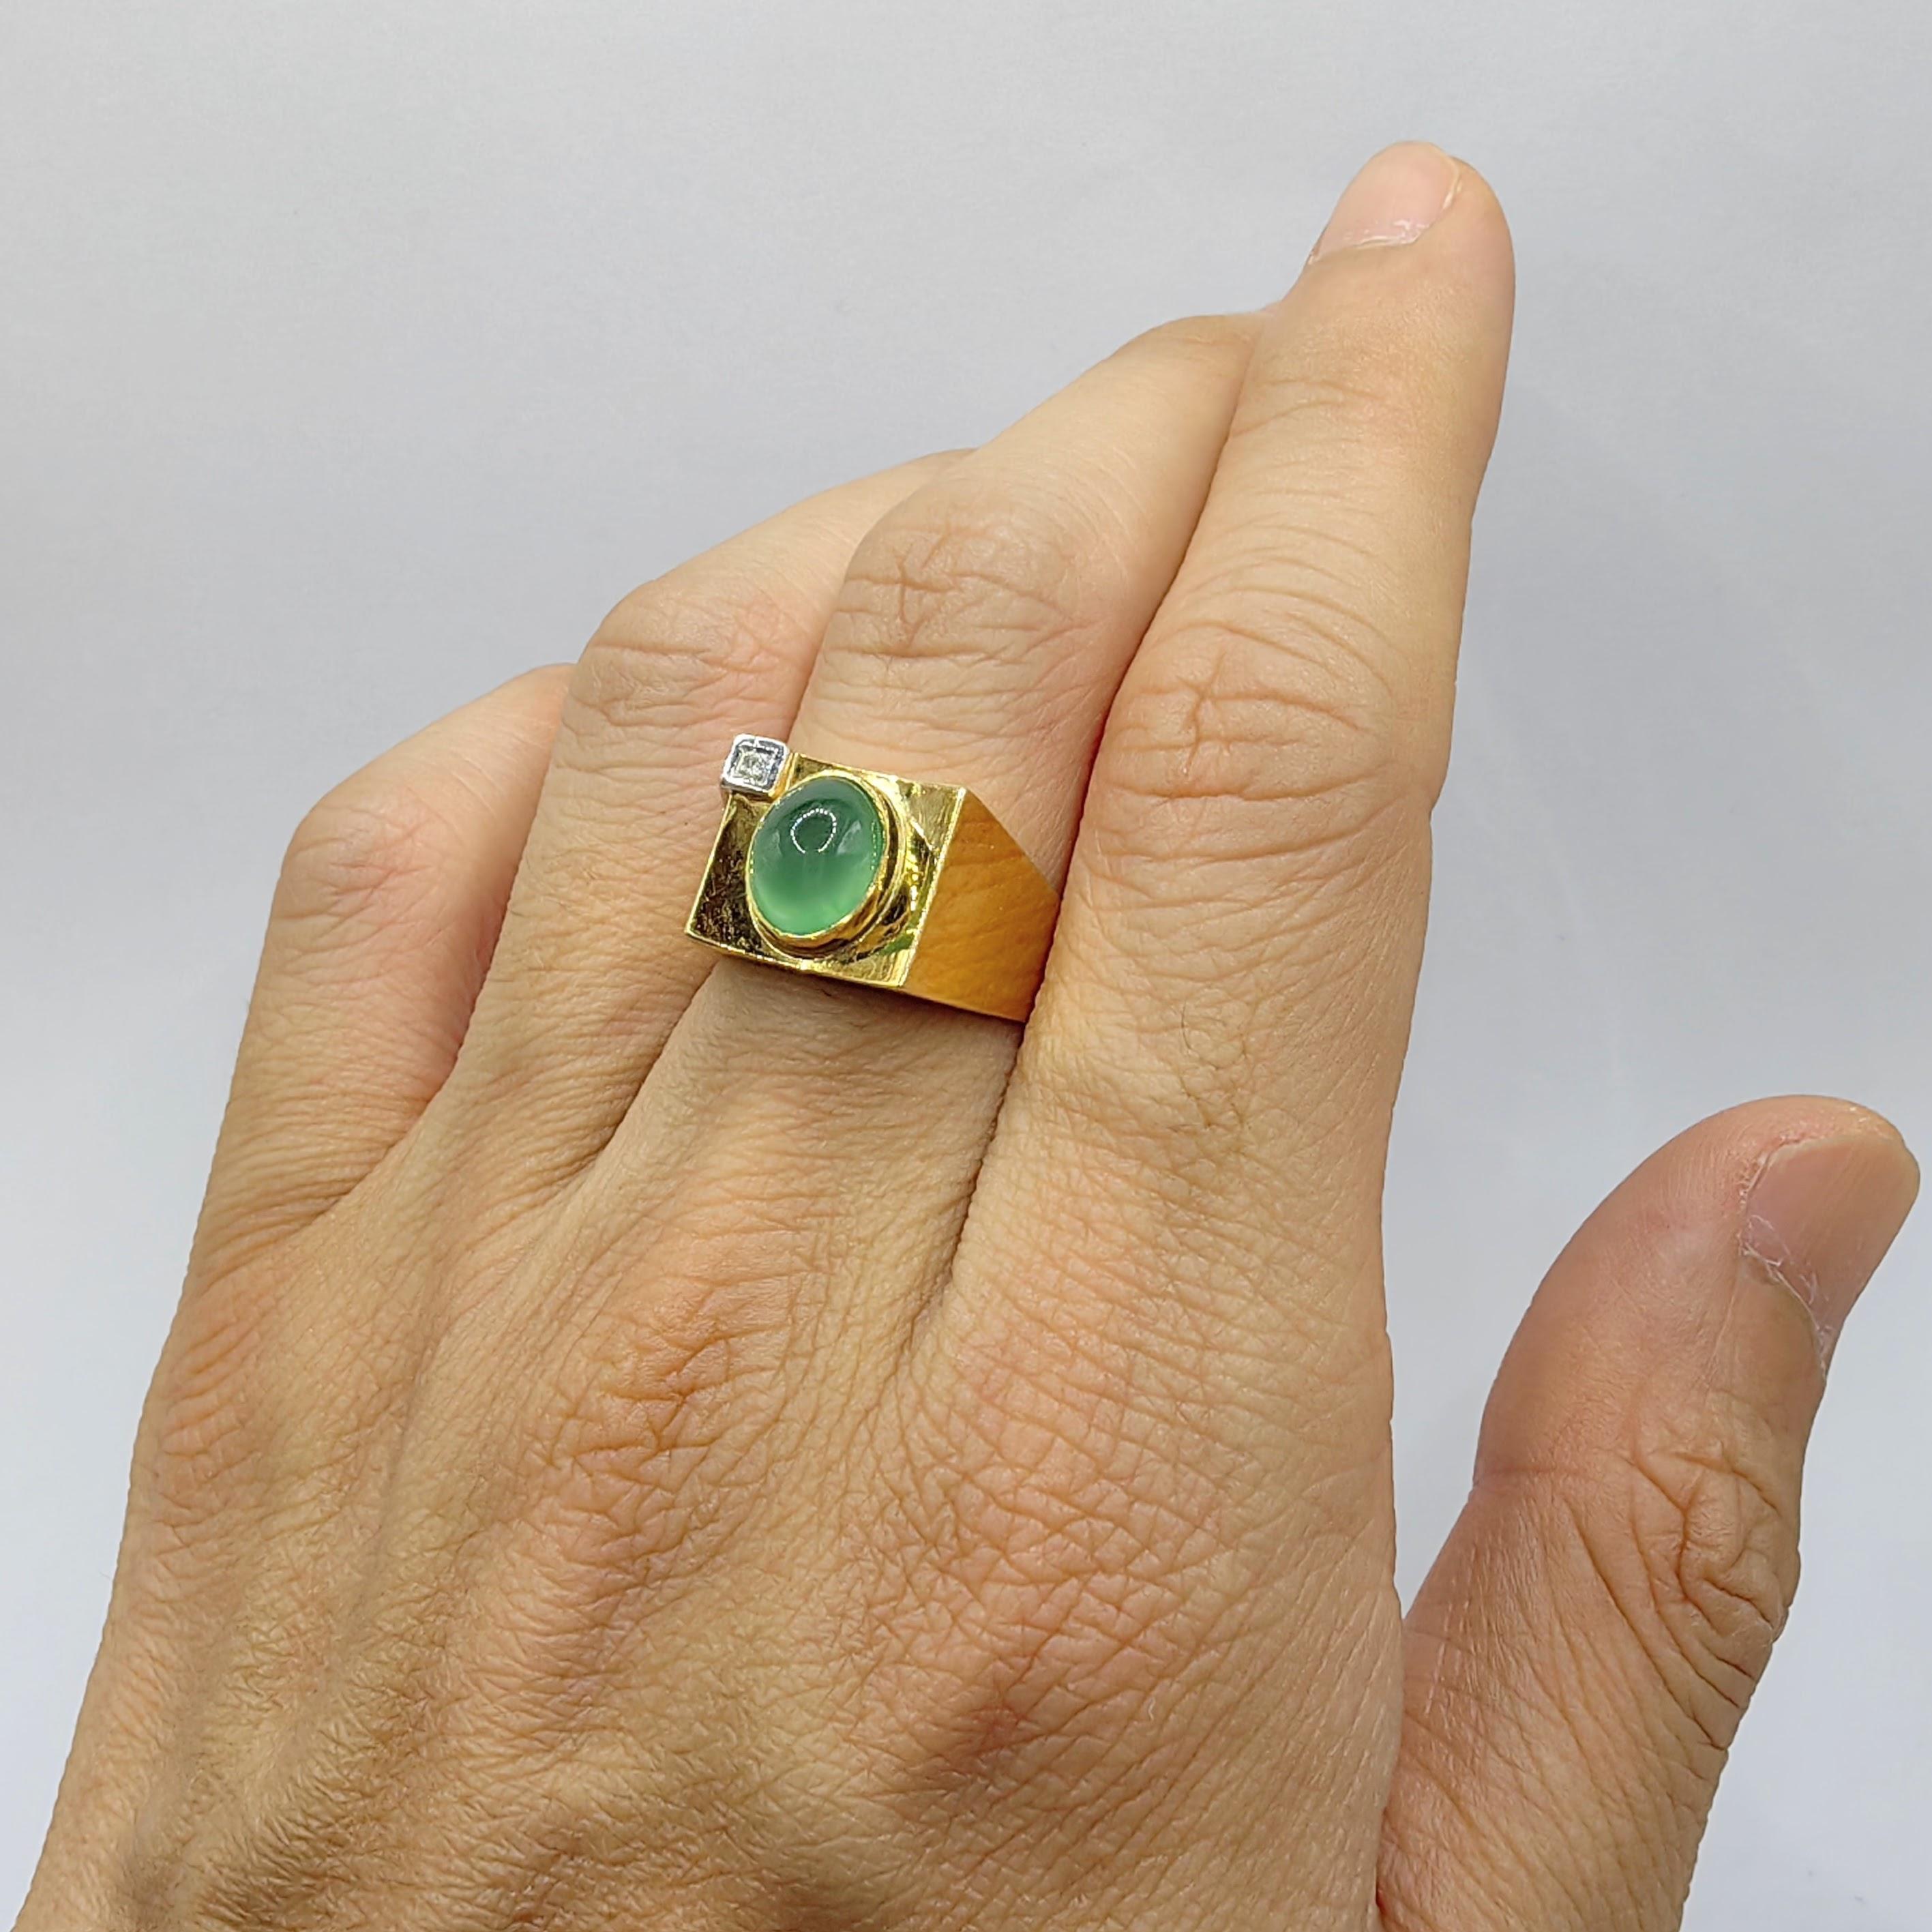 Wir präsentieren unseren Vintage Icy Light Apple Green Jadeit Jade Diamond Ring in 14K Two-tone Gold, ein fesselndes Stück, das Eleganz ausstrahlt und die natürliche Schönheit der Jadeit Jade zur Geltung bringt. Dieser exquisite Ring zeigt in der